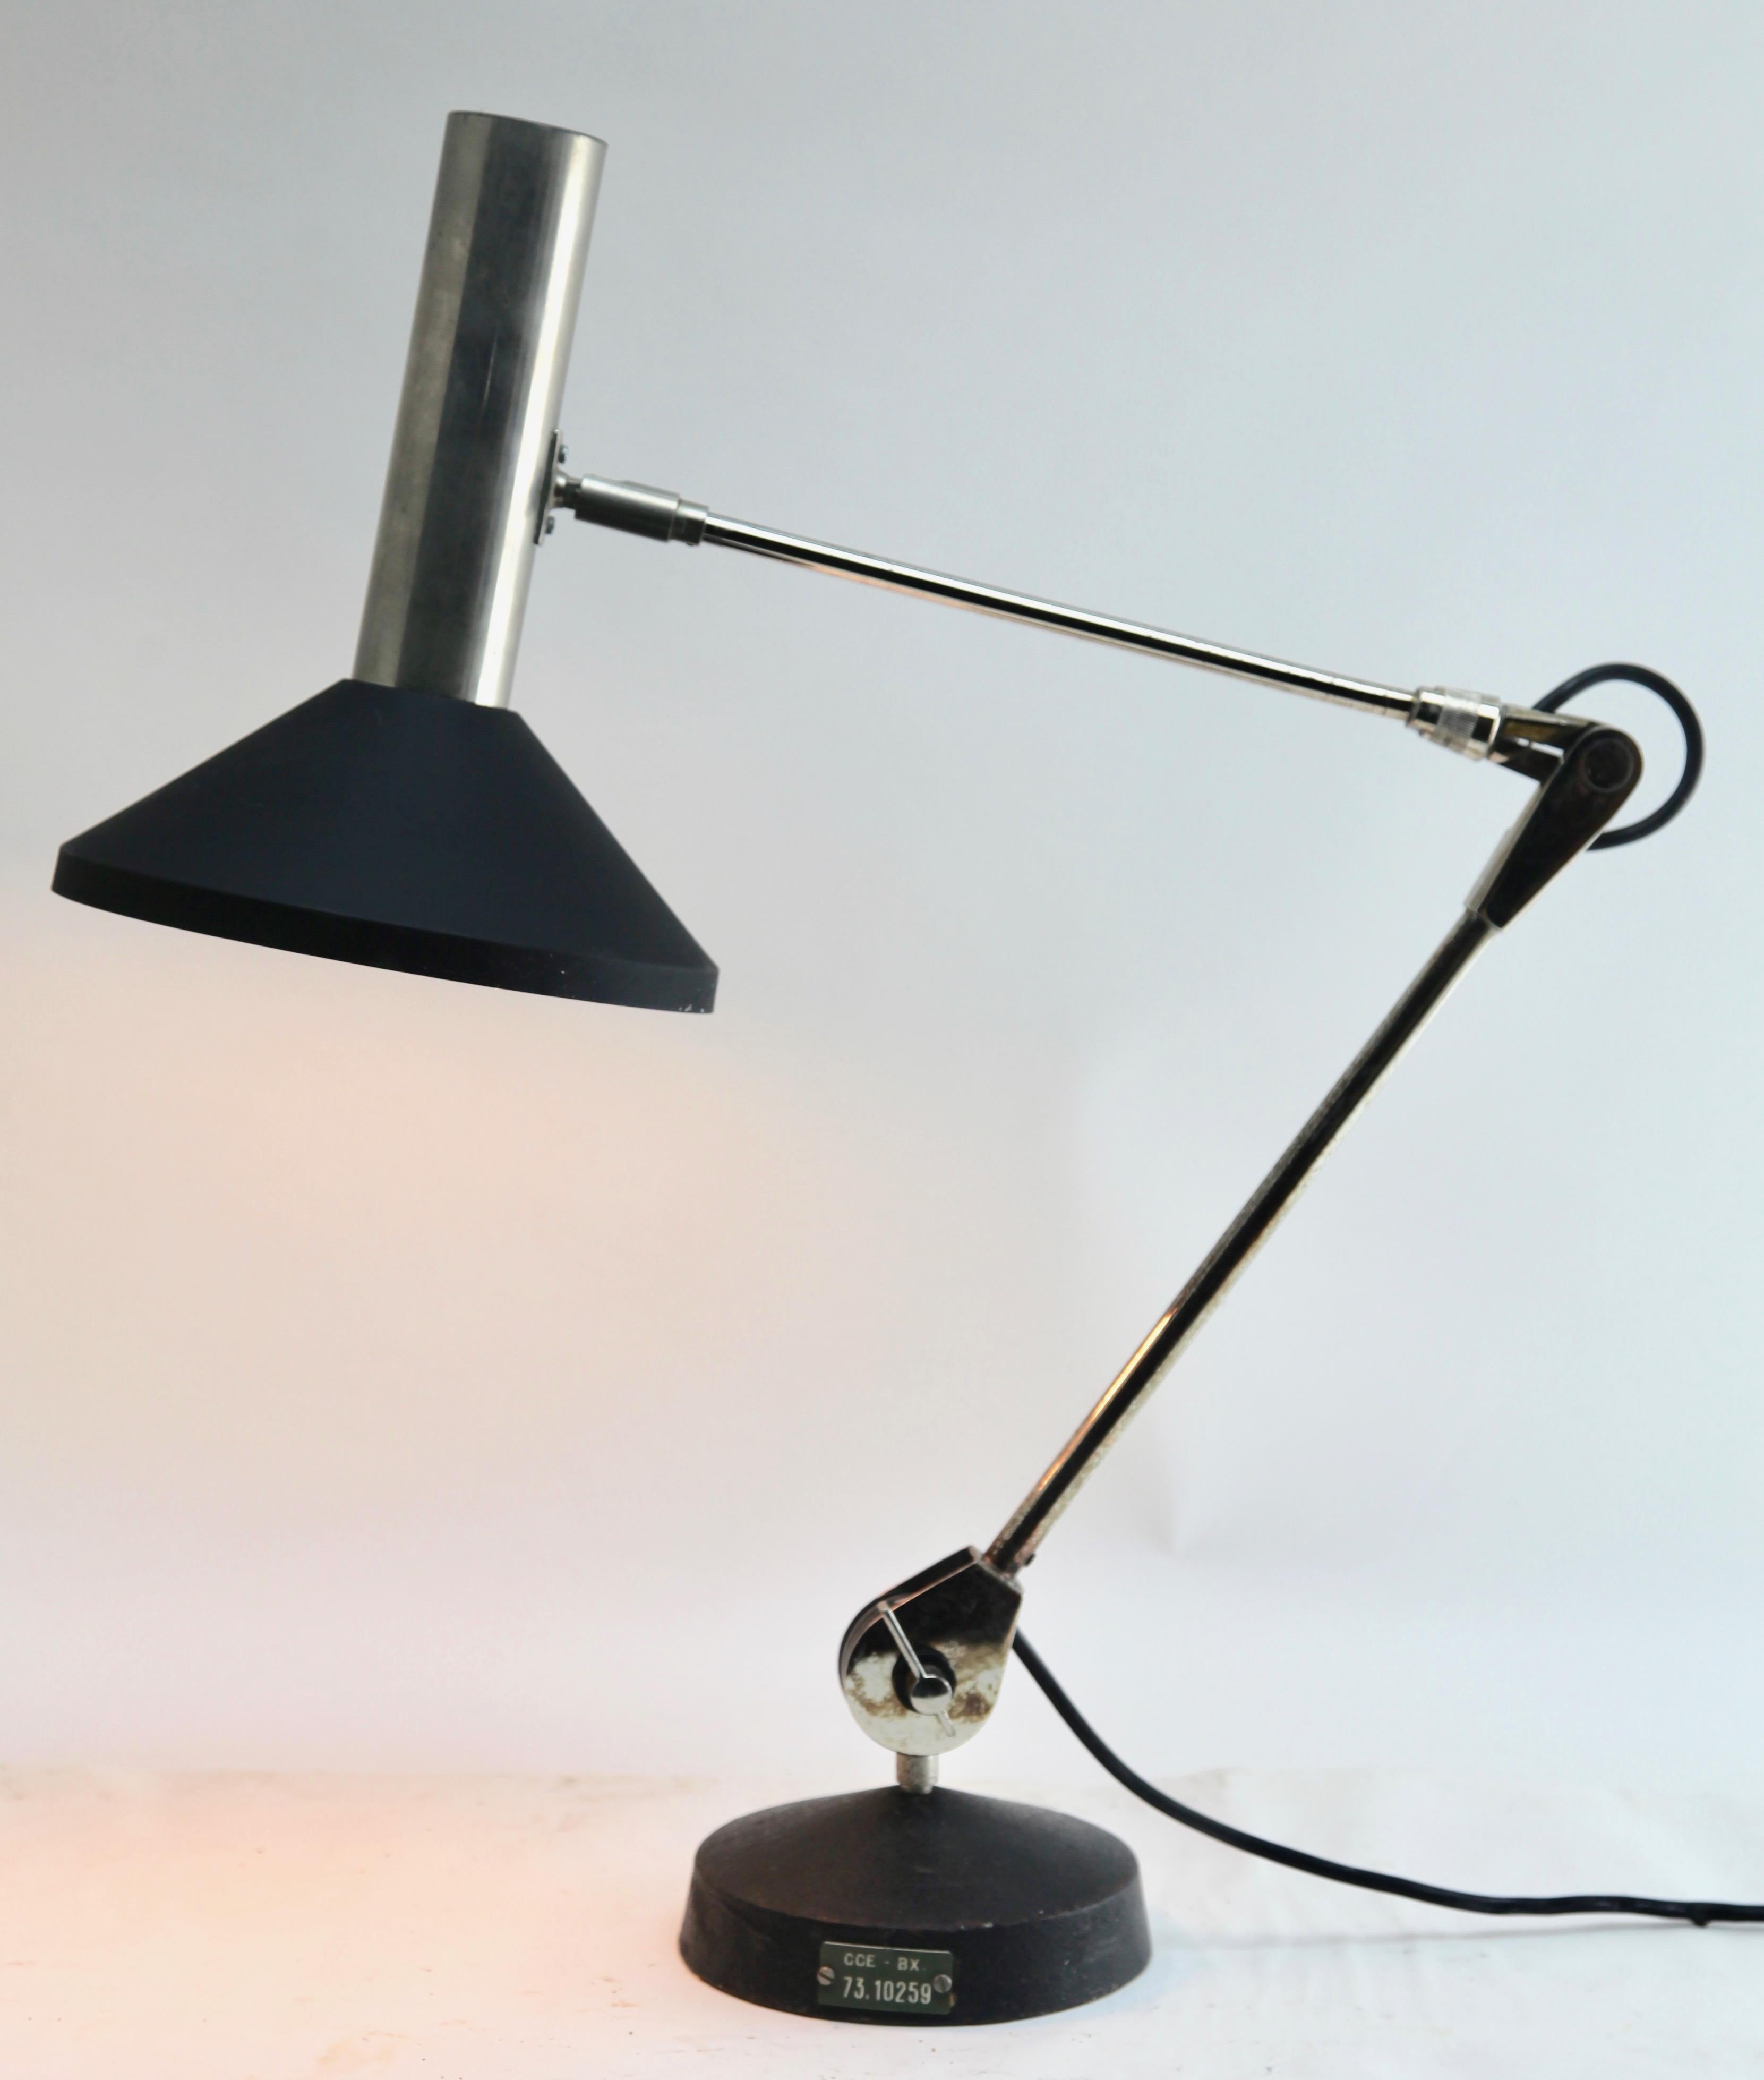  Hillebrand Desk Lamp Chrome and Black Metal Adjustable Germany 1965s 2